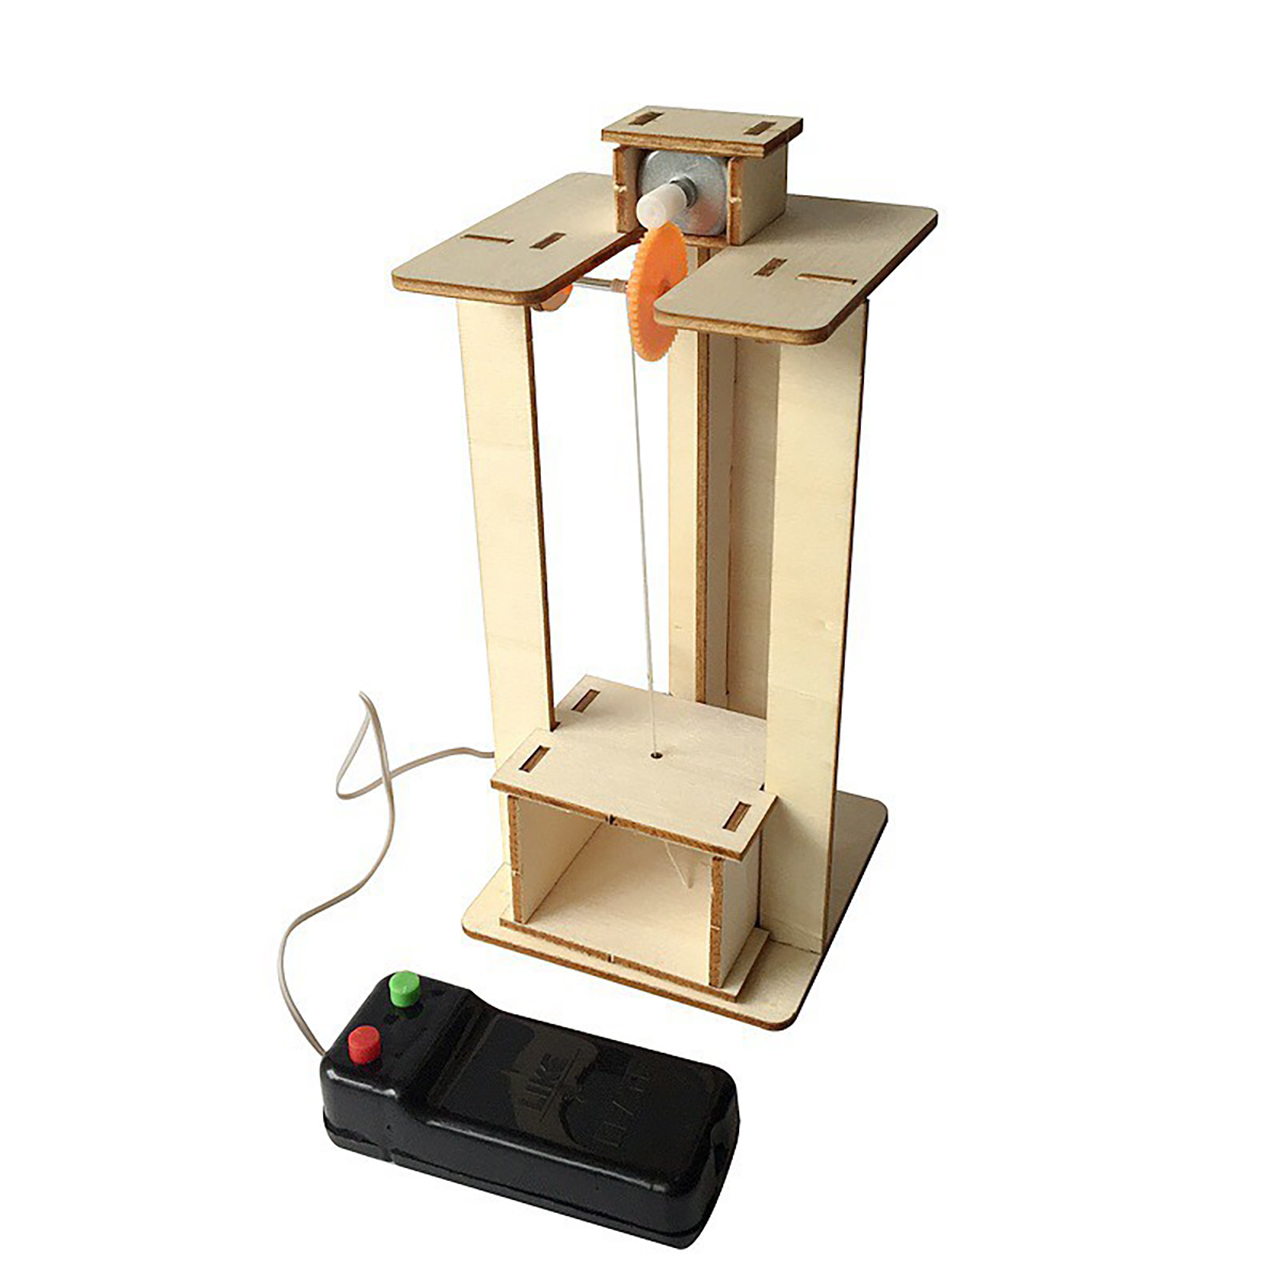 Đồ chơi trẻ em S14 thông minh sáng tạo STEM (STEAM) mô hình lắp ghép thang máy bằng gỗ